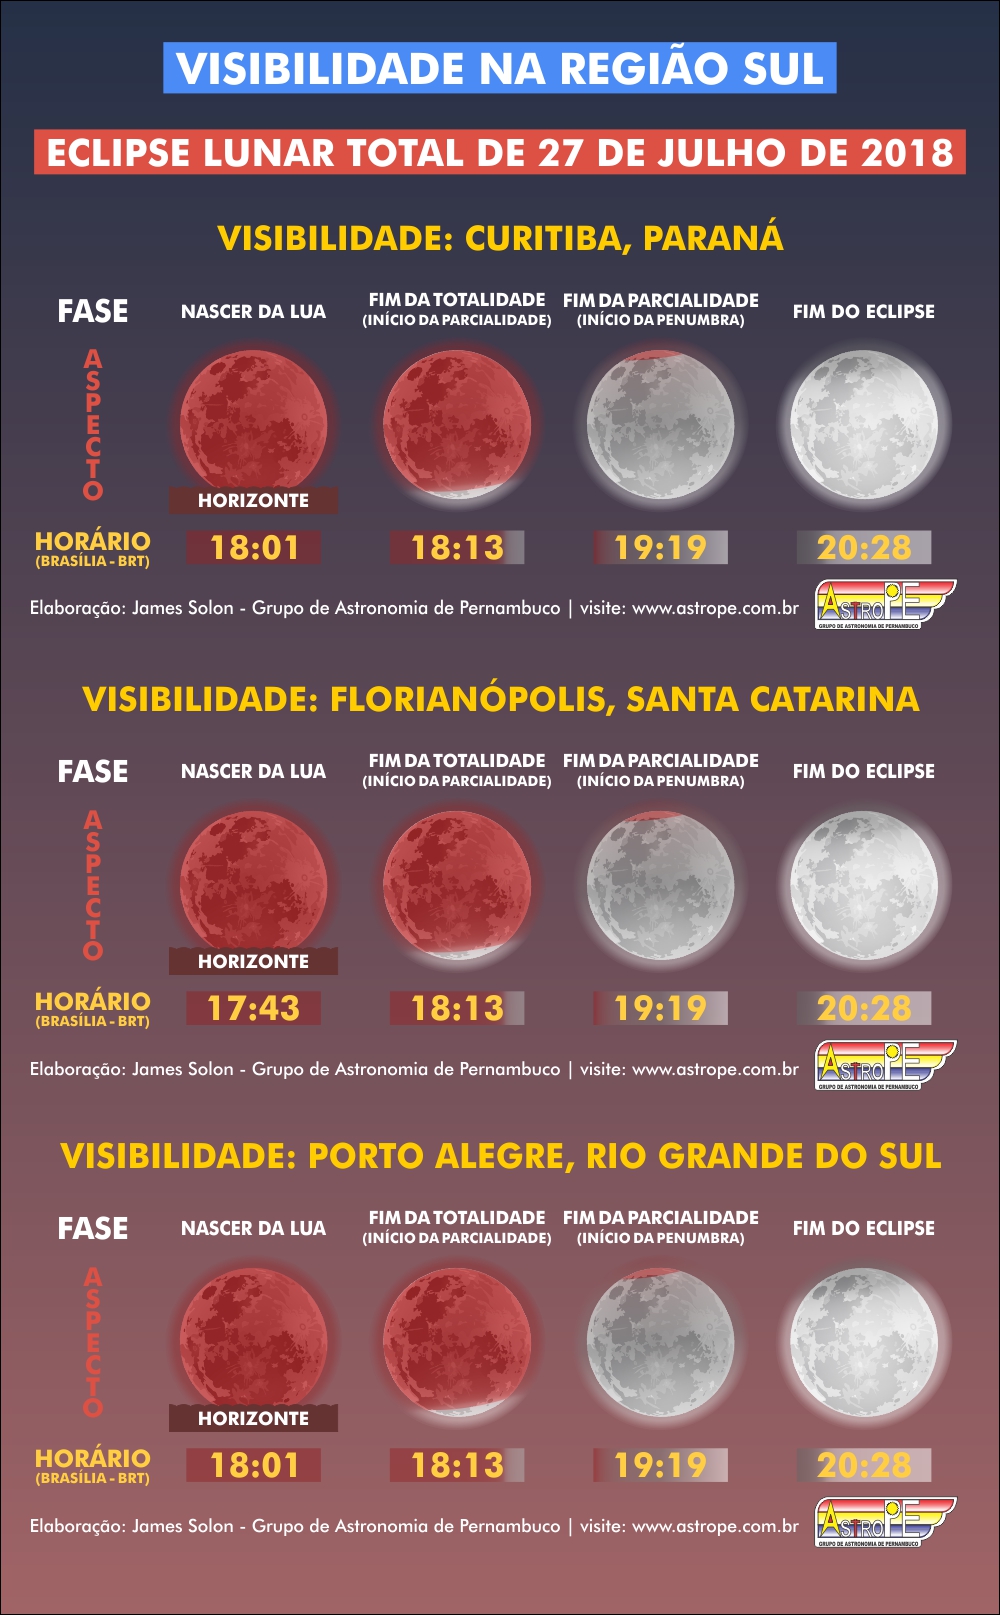 Horários e visibilidade do Eclipse Lunar Total de 27 de julho de 2018 na Região Sul do Brasil. Crédito: AstroPE.